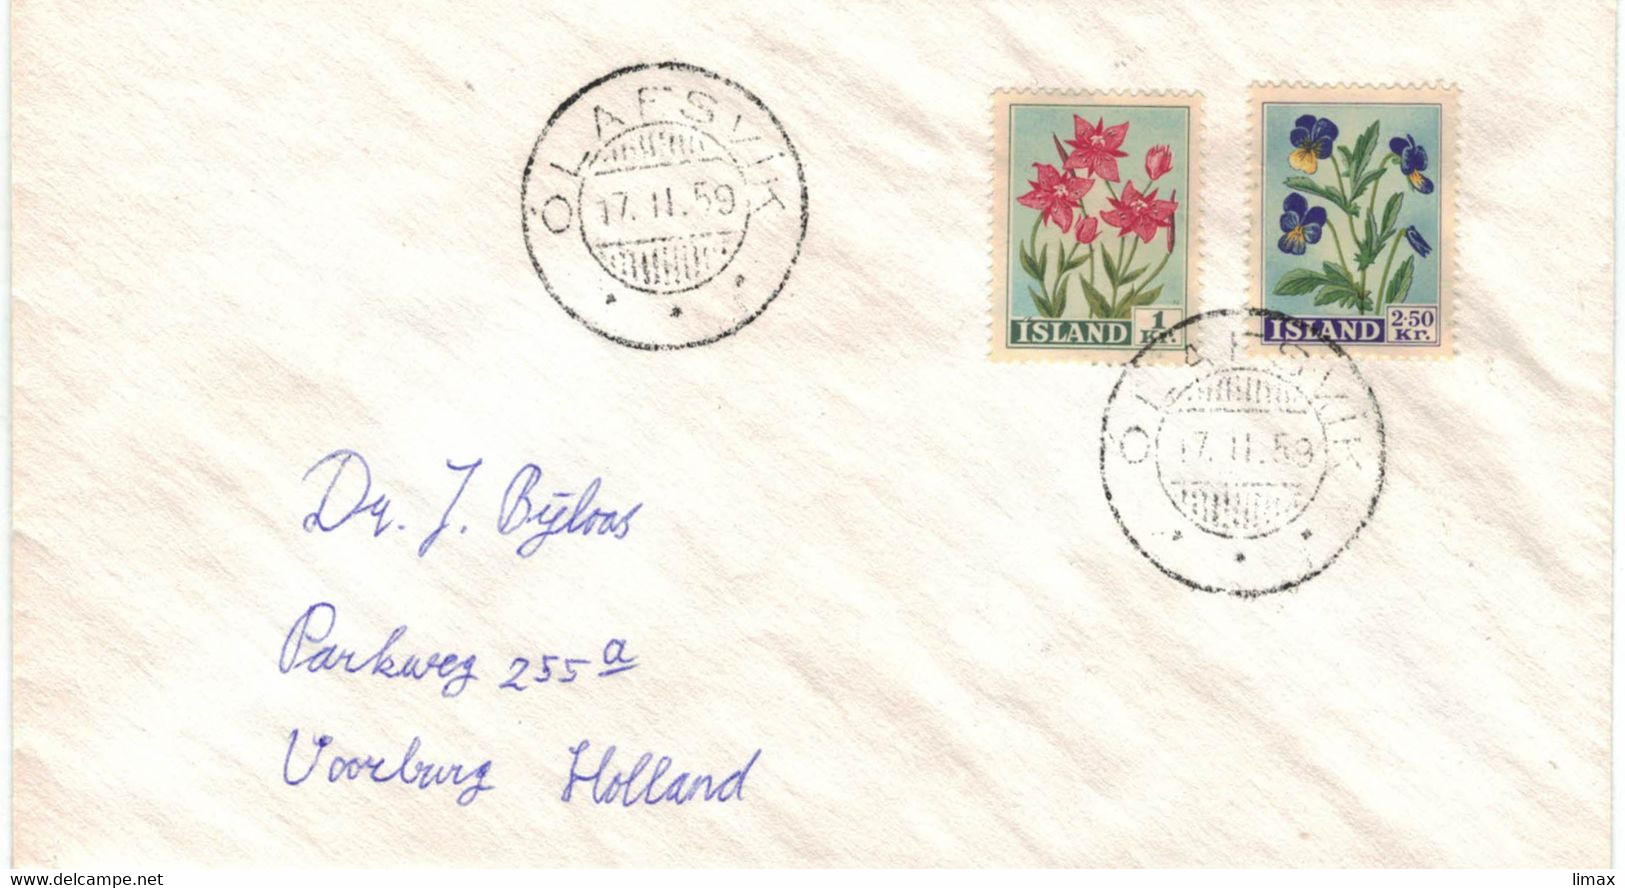 Island Olafsvik Island 1959 - Epilobium Weidenröschen Willow Herb - Stiefmütterchen - Blumen - Briefe U. Dokumente